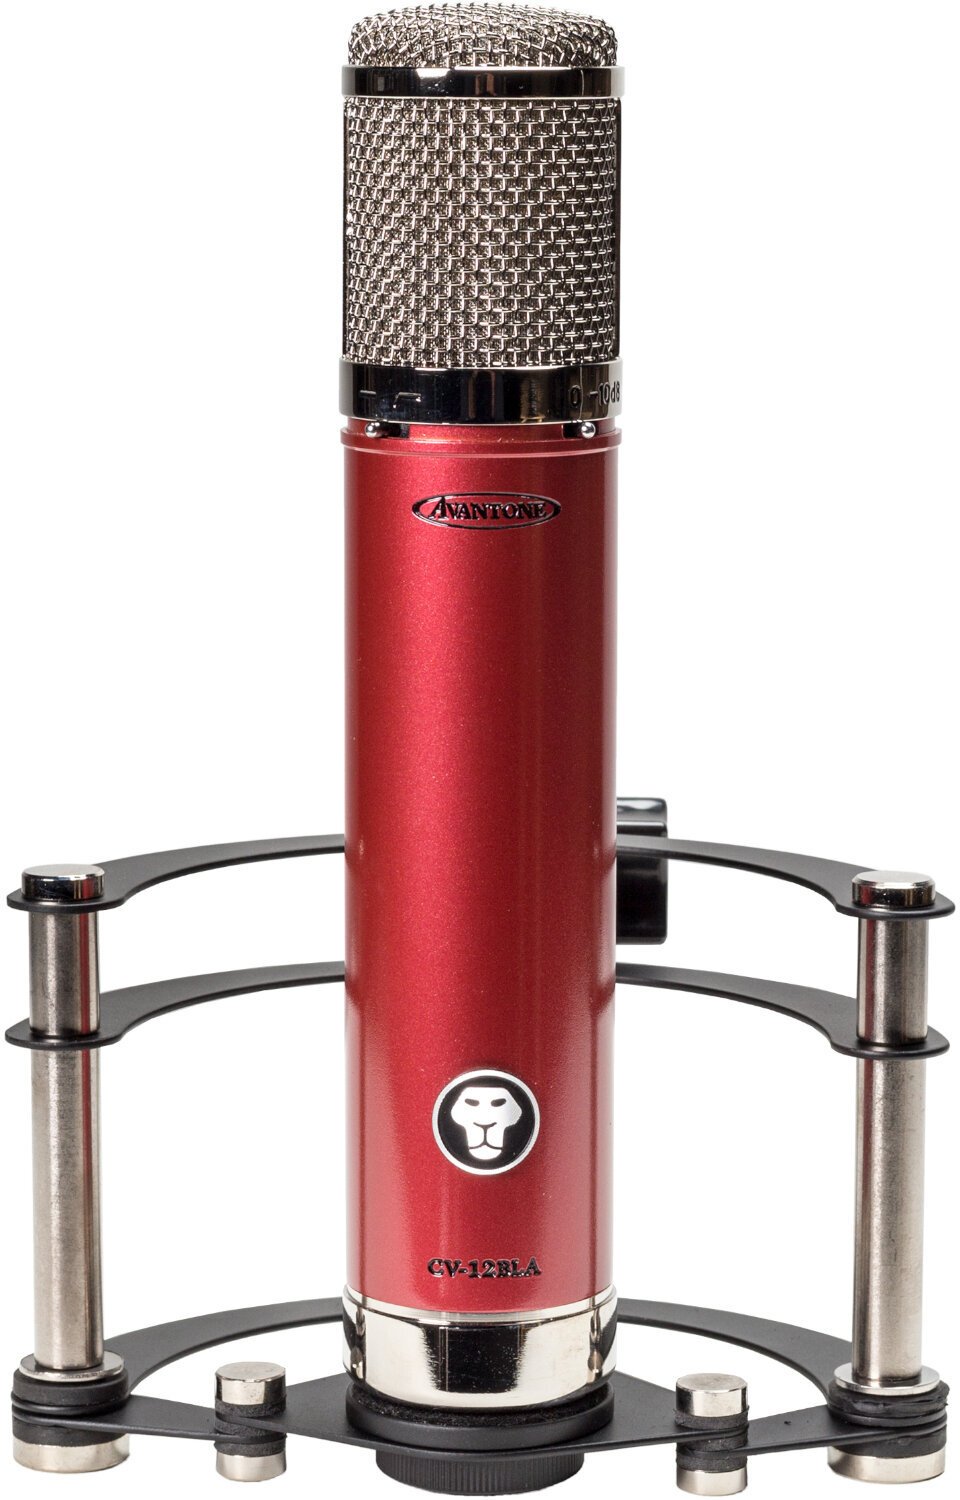 Microphone à condensateur pour studio Avantone Pro CV-12BLA Microphone à condensateur pour studio